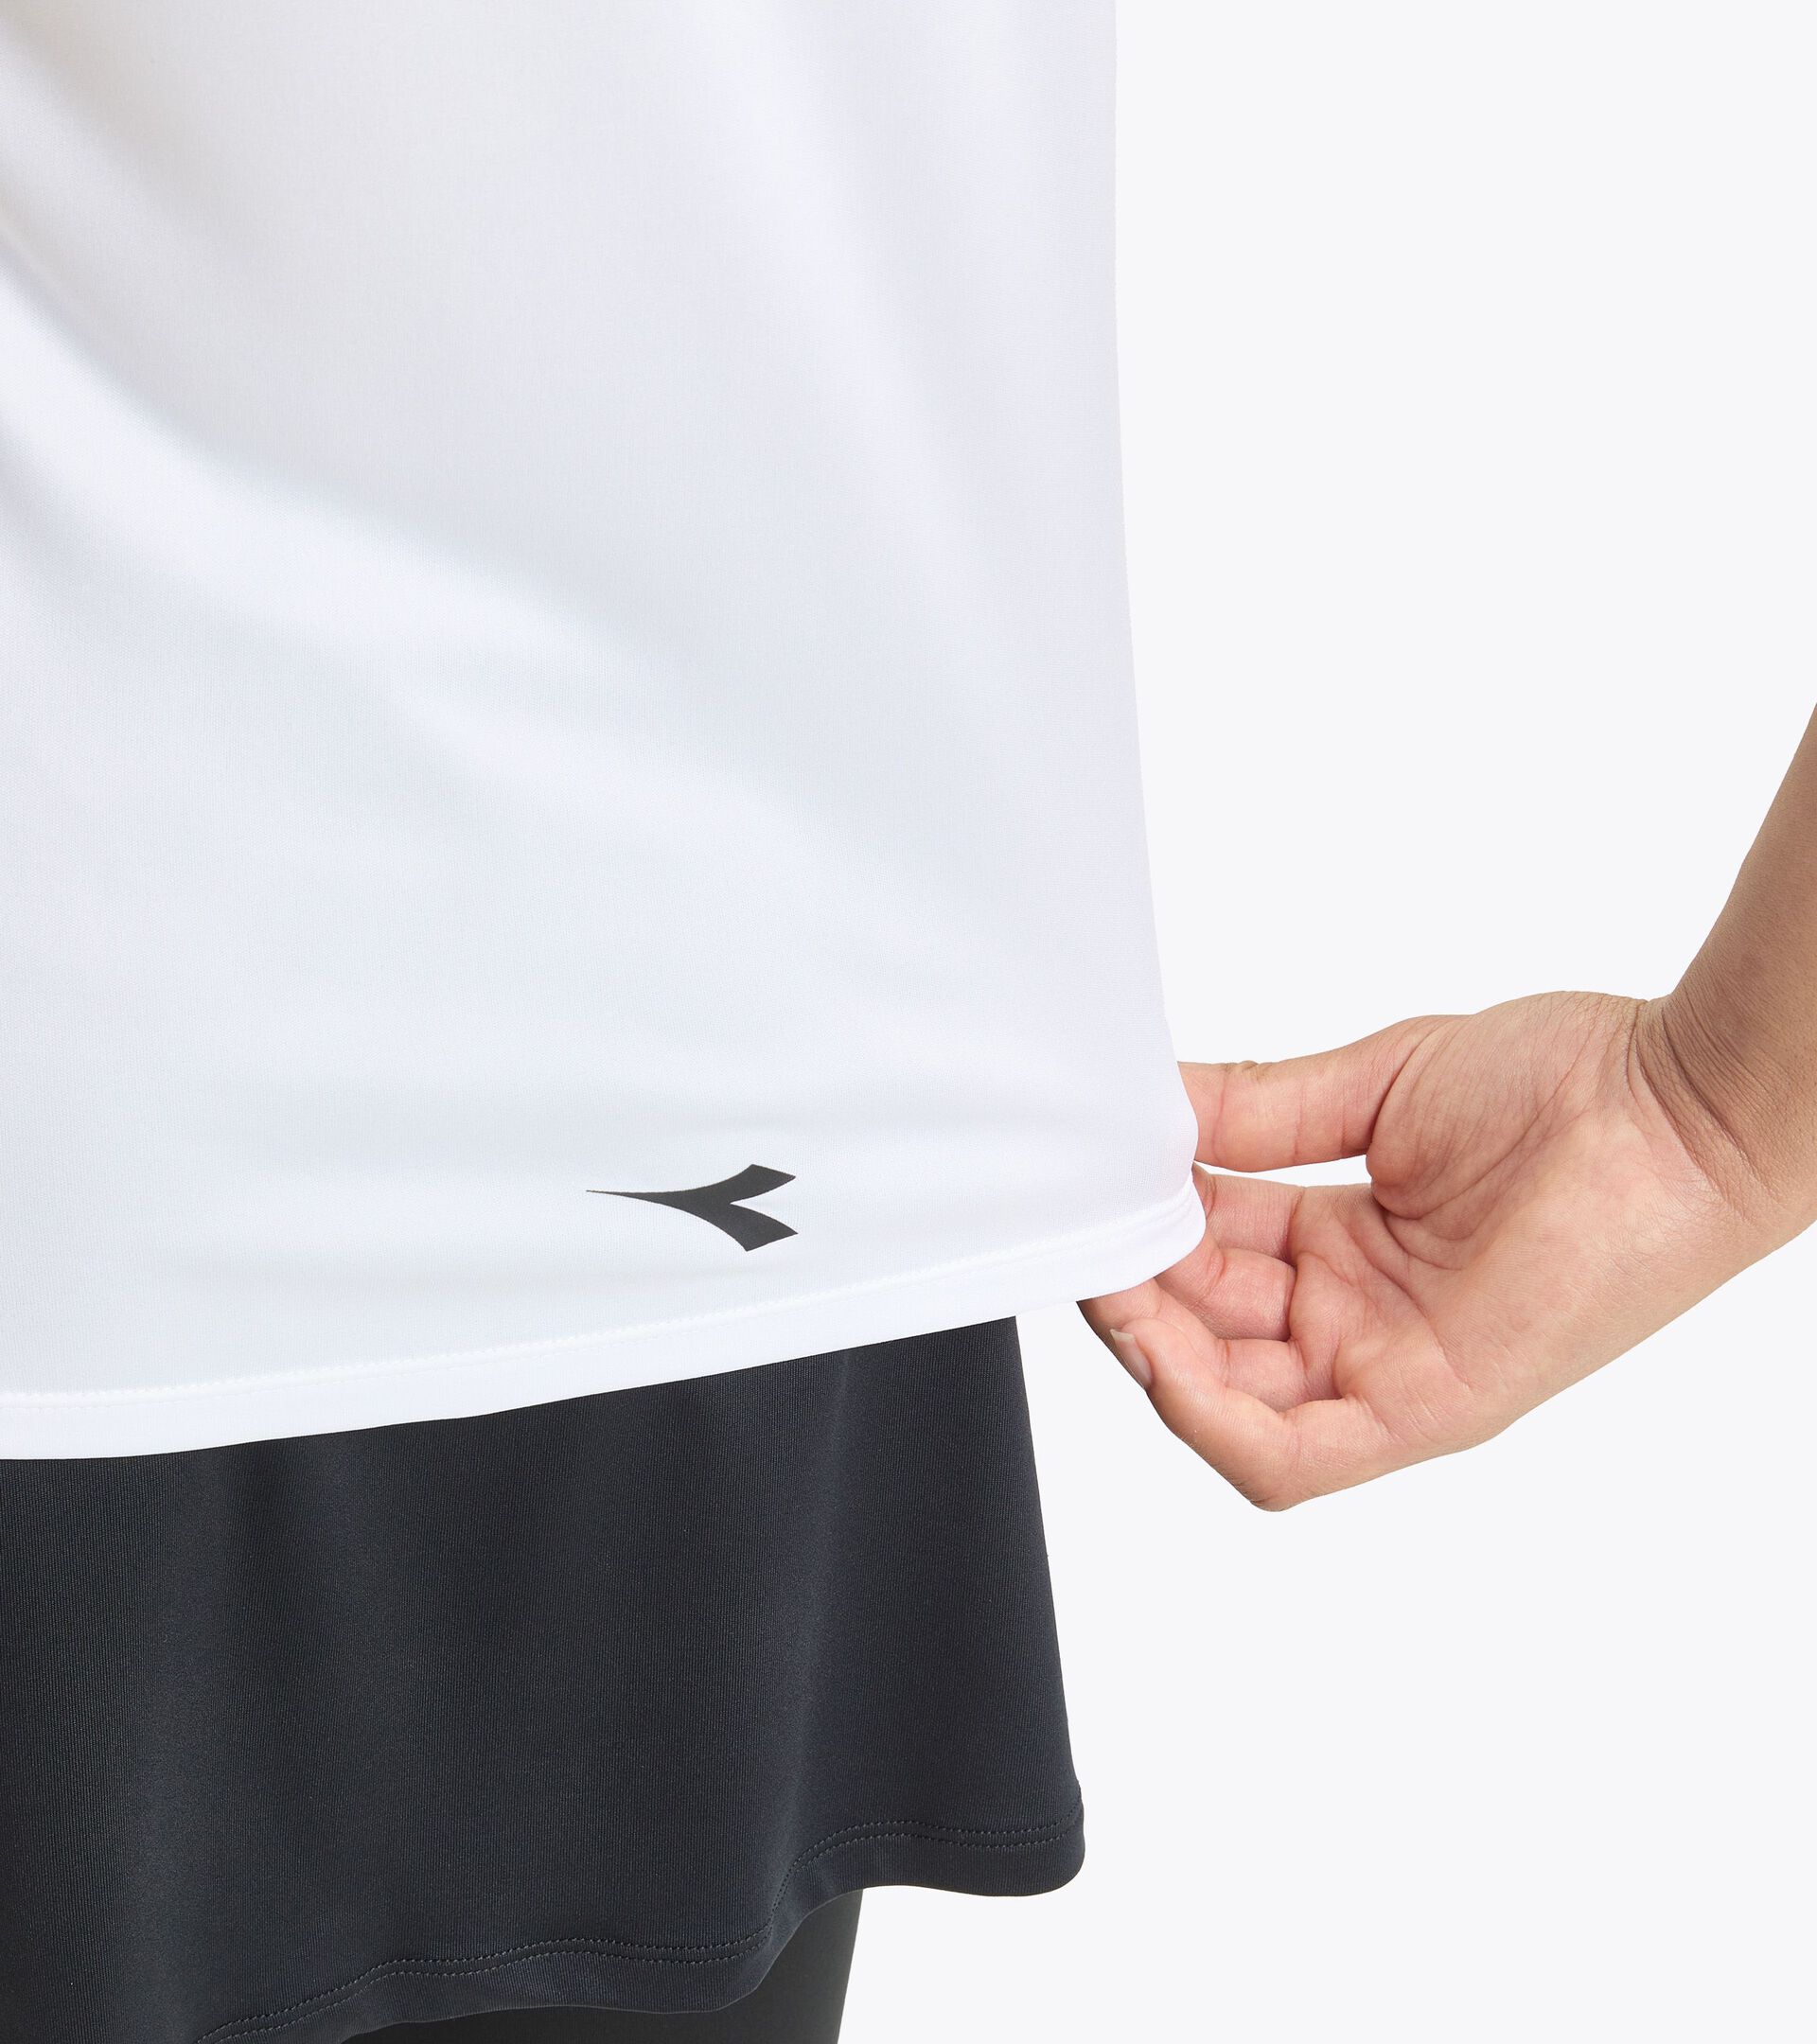 T-shirt de tennis - Femme L. SS T-SHIRT BLANC VIF/NOIR - Diadora